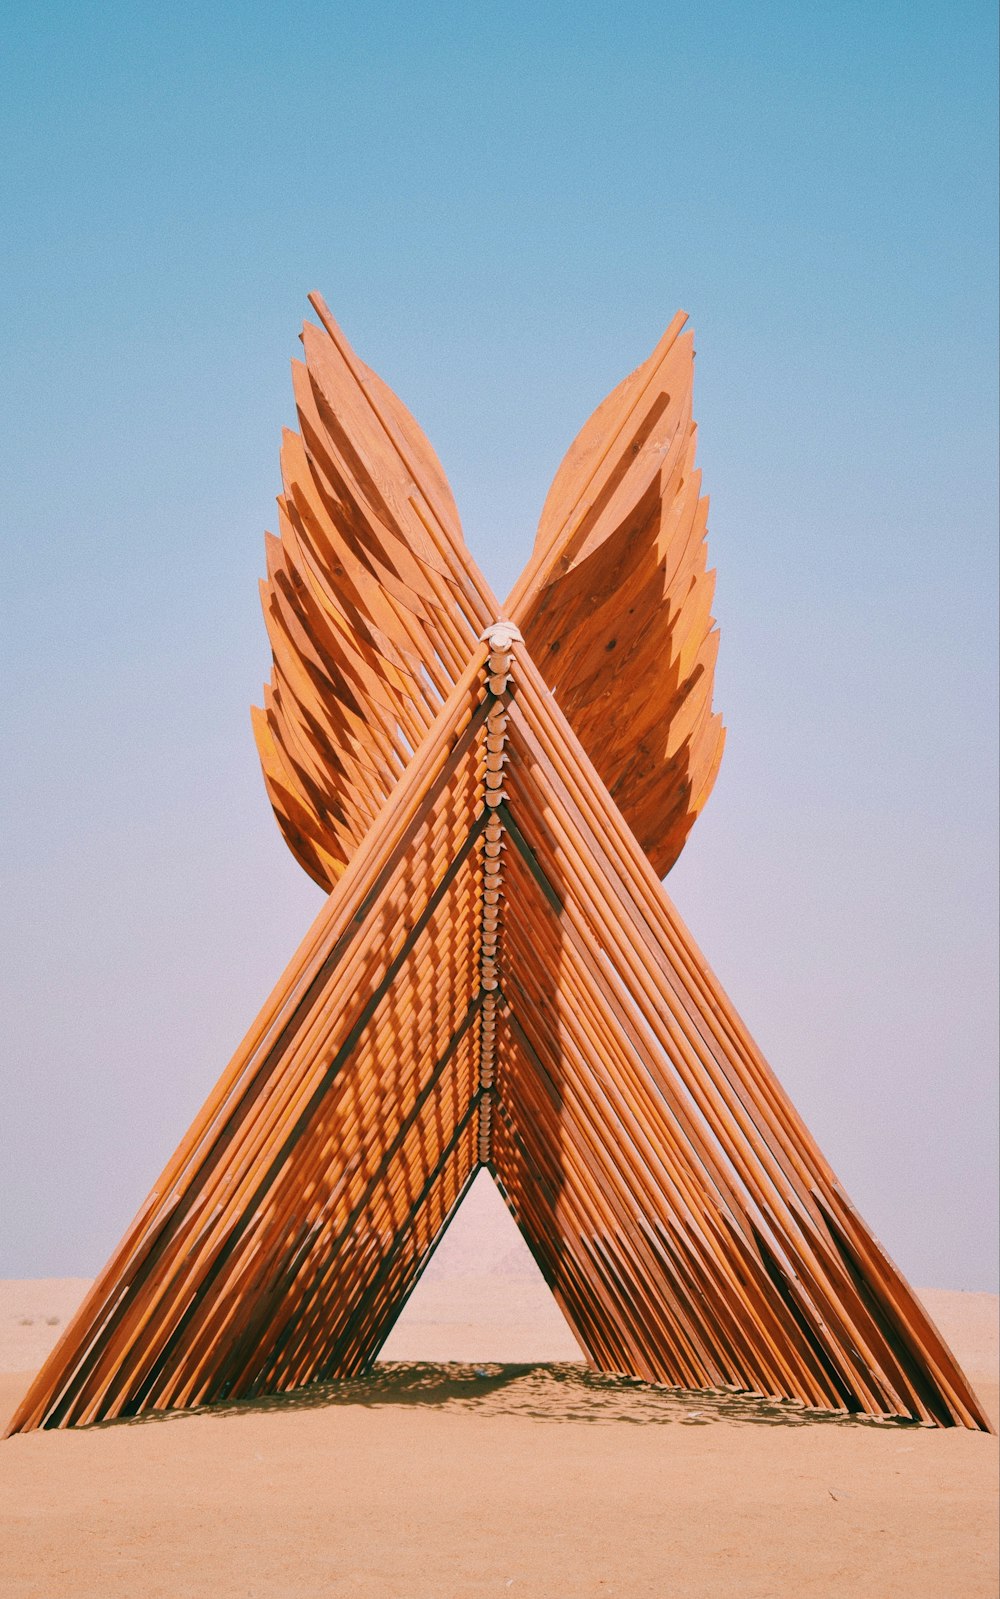 Una scultura fatta di bastoncini di legno nel deserto